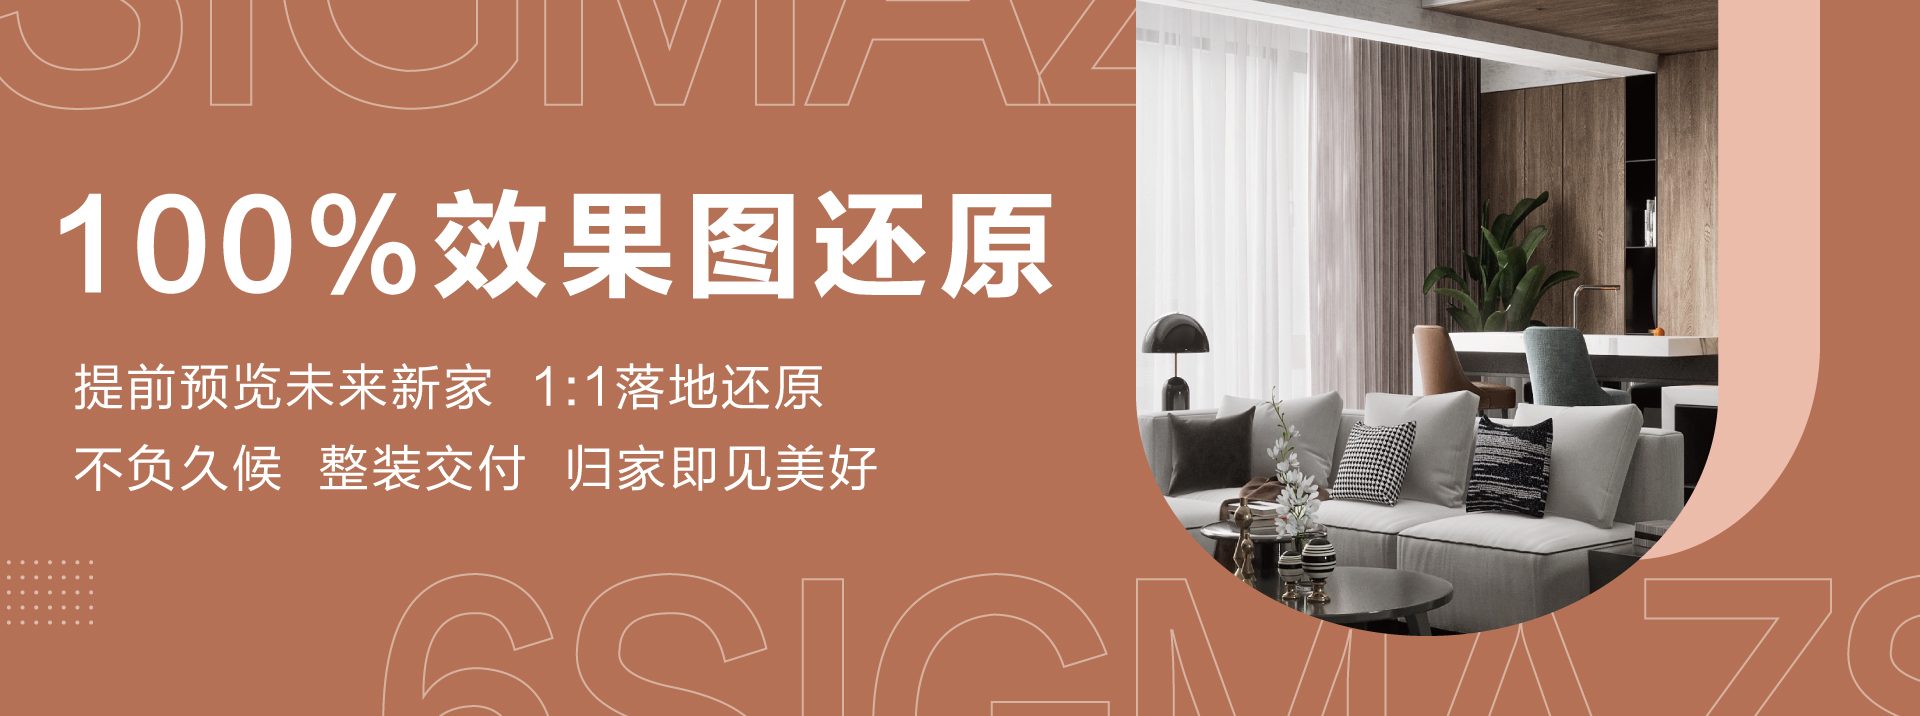 39p亚洲精品六西格玛装饰活动海报